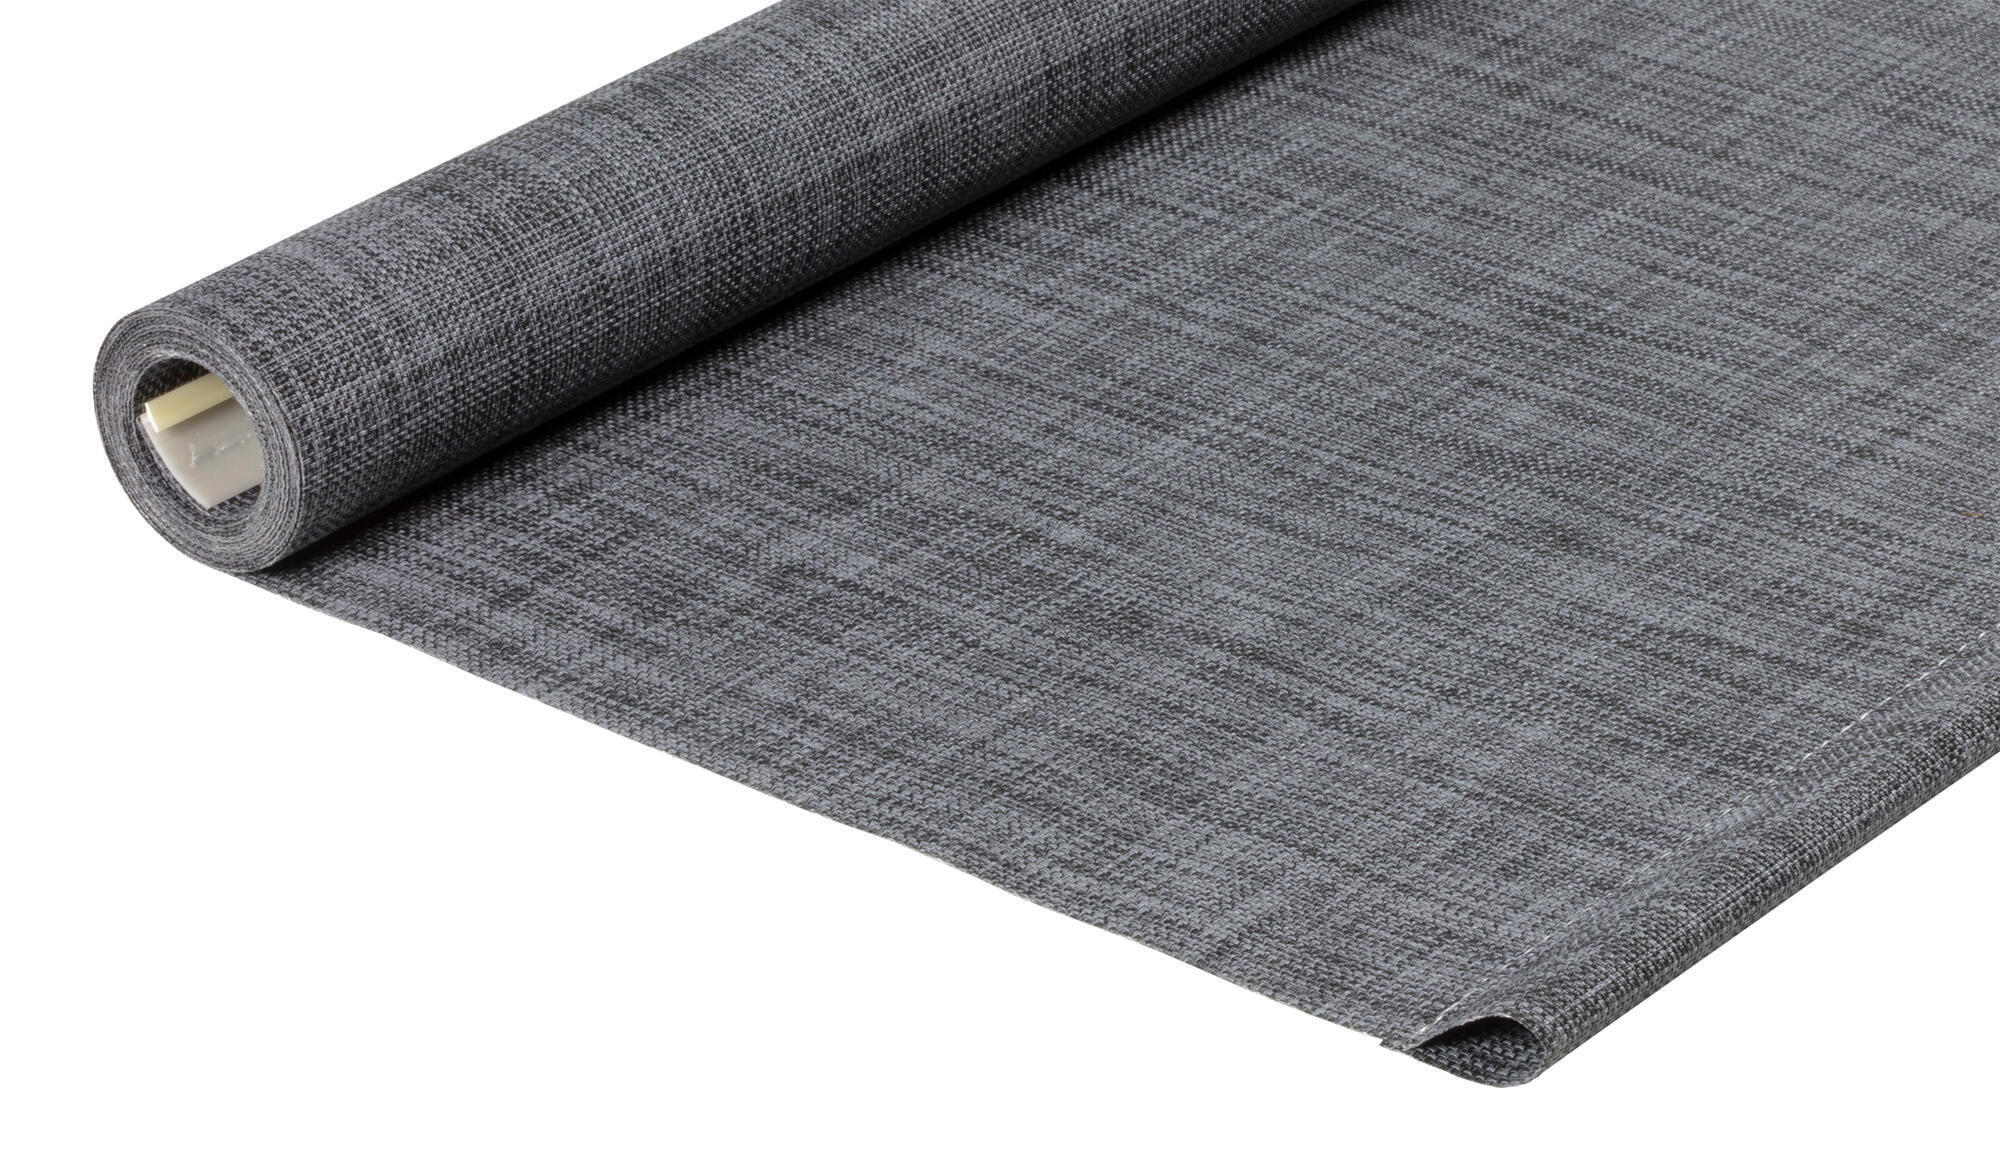 Tessuto per tende a rullo filtrante INSPIRE Puebla grigio / argento 85.8 x 250 cm - 3